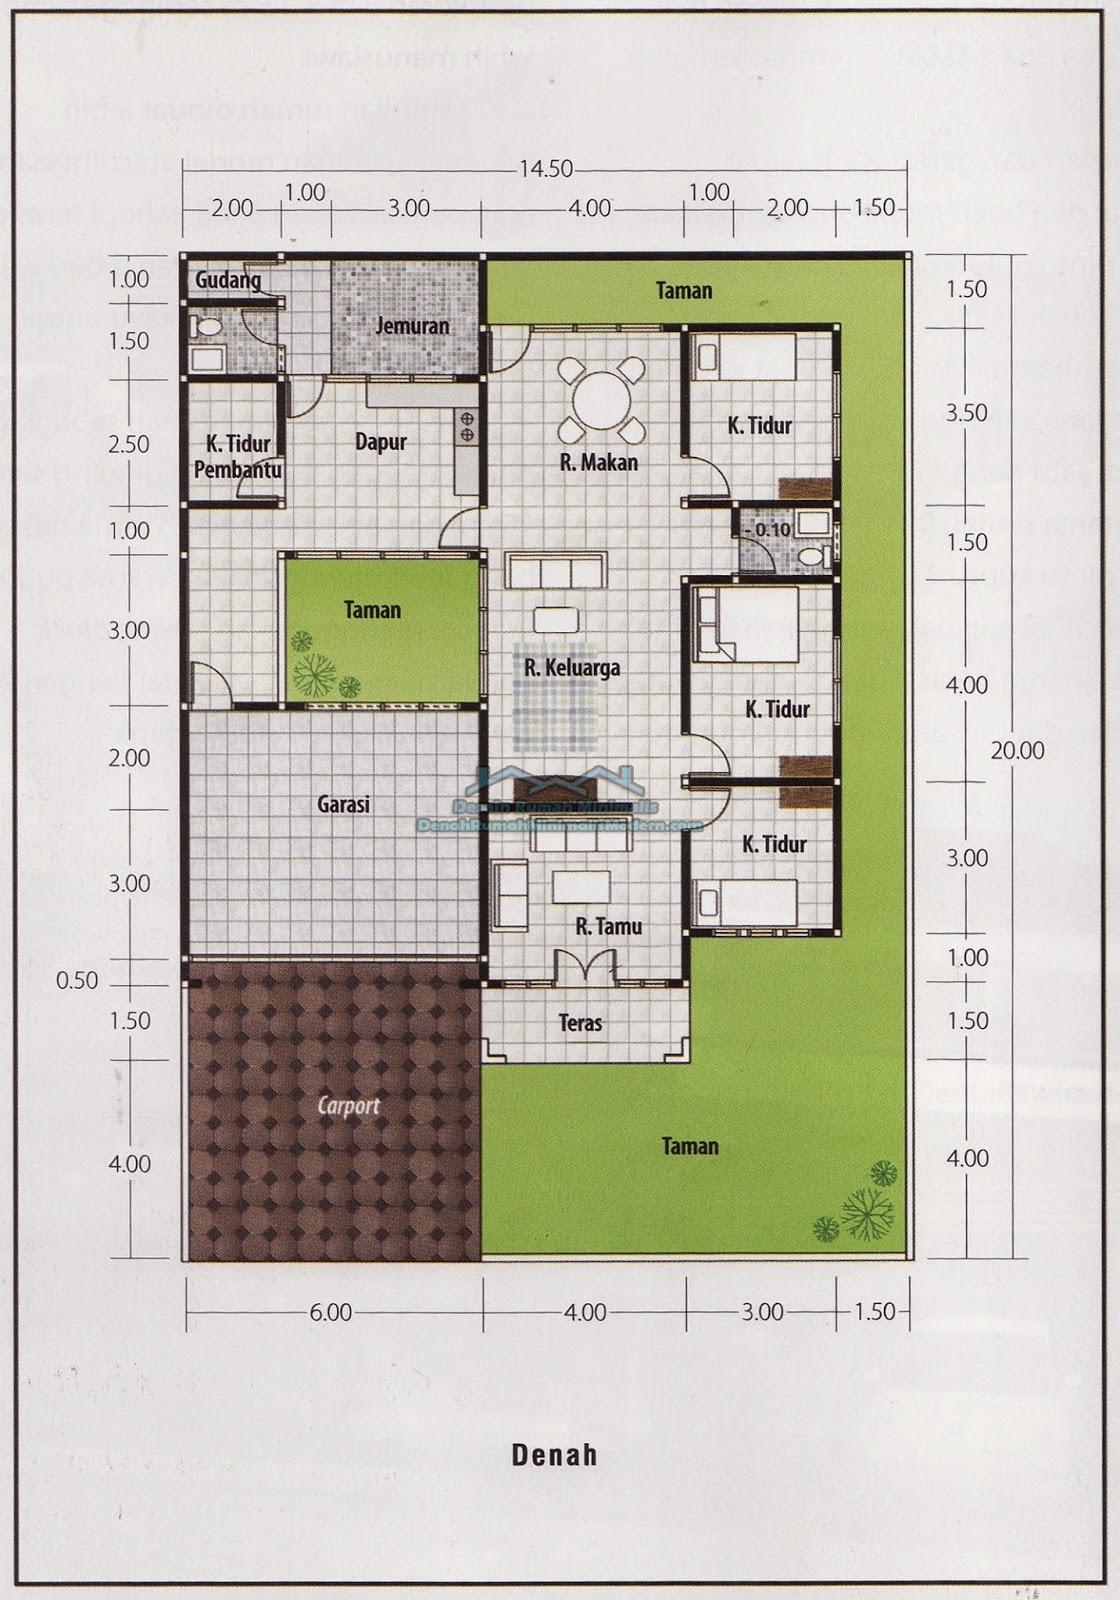 Rumah Minimalis Luas Tanah 300m2 - Gambar Design Rumah - Denah Rumah Luas Tanah 300 M2